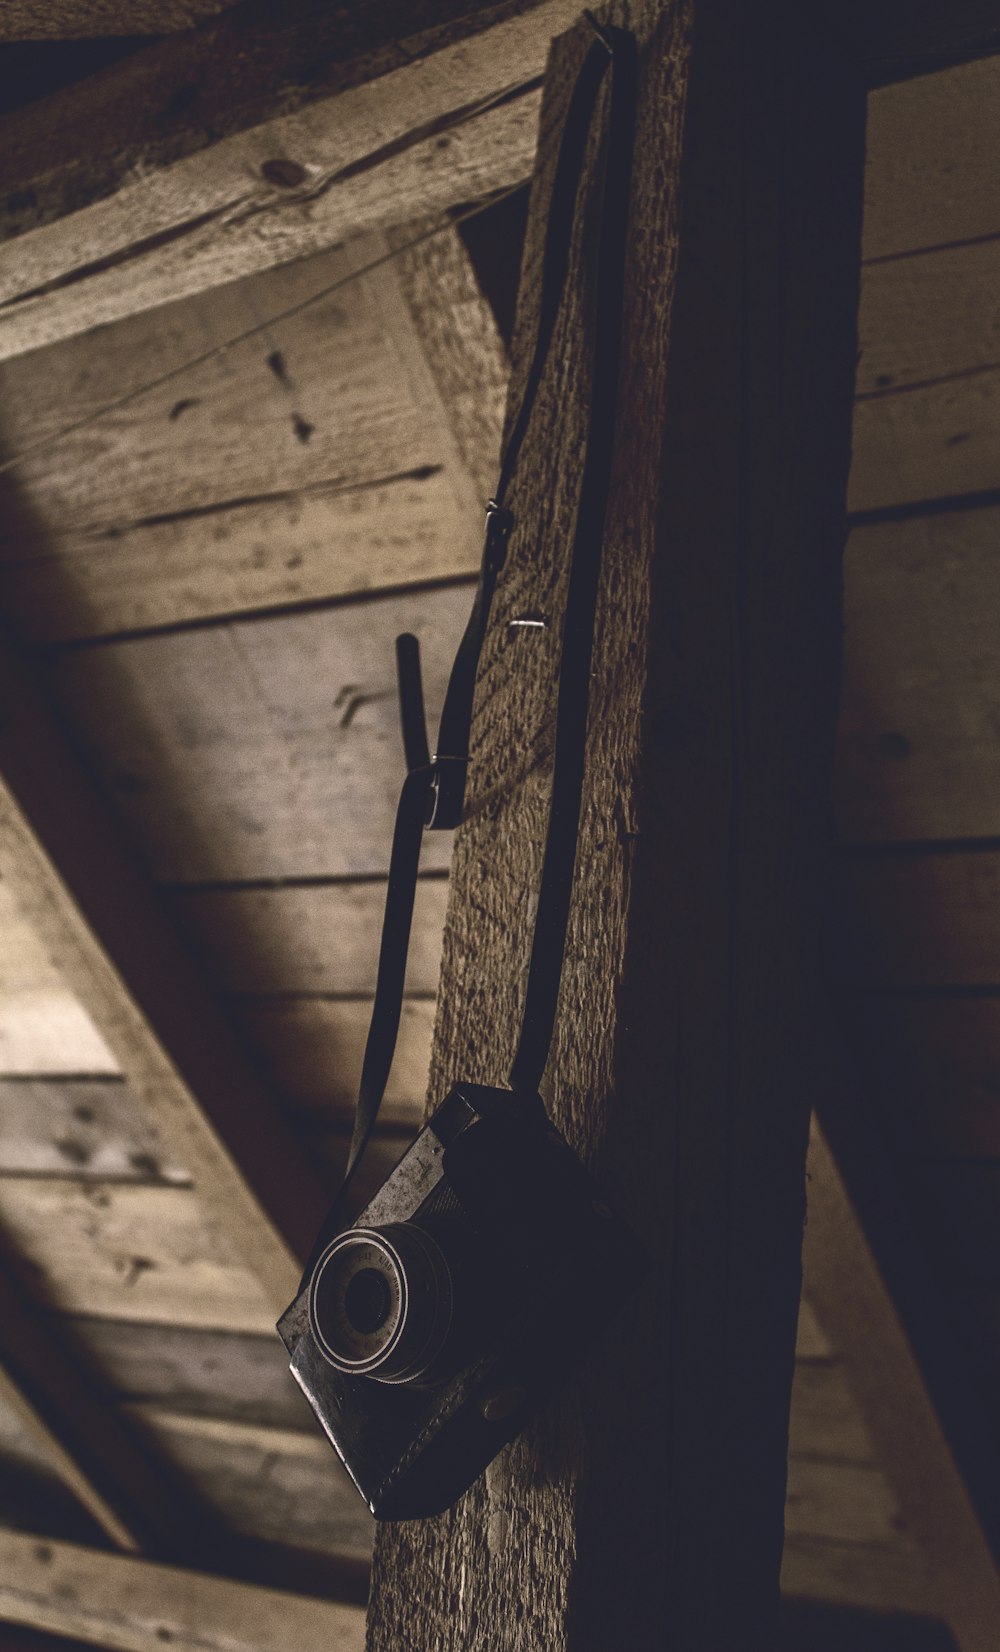 câmera point-and-shoot preta pendurada em uma barra de madeira marrom